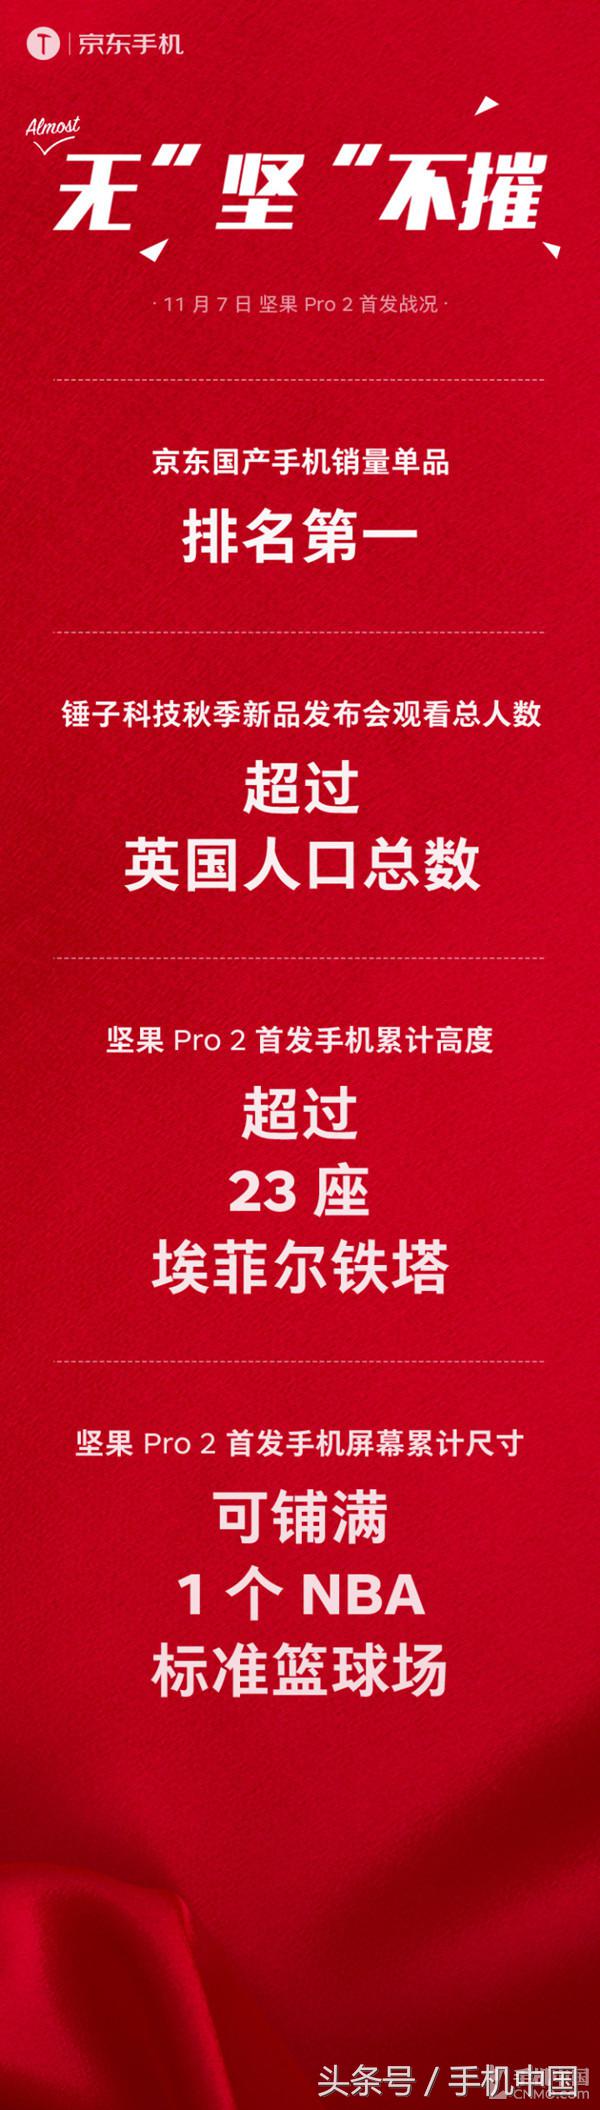 干果Pro 两人气爆满 夺京东商城国销售量第一